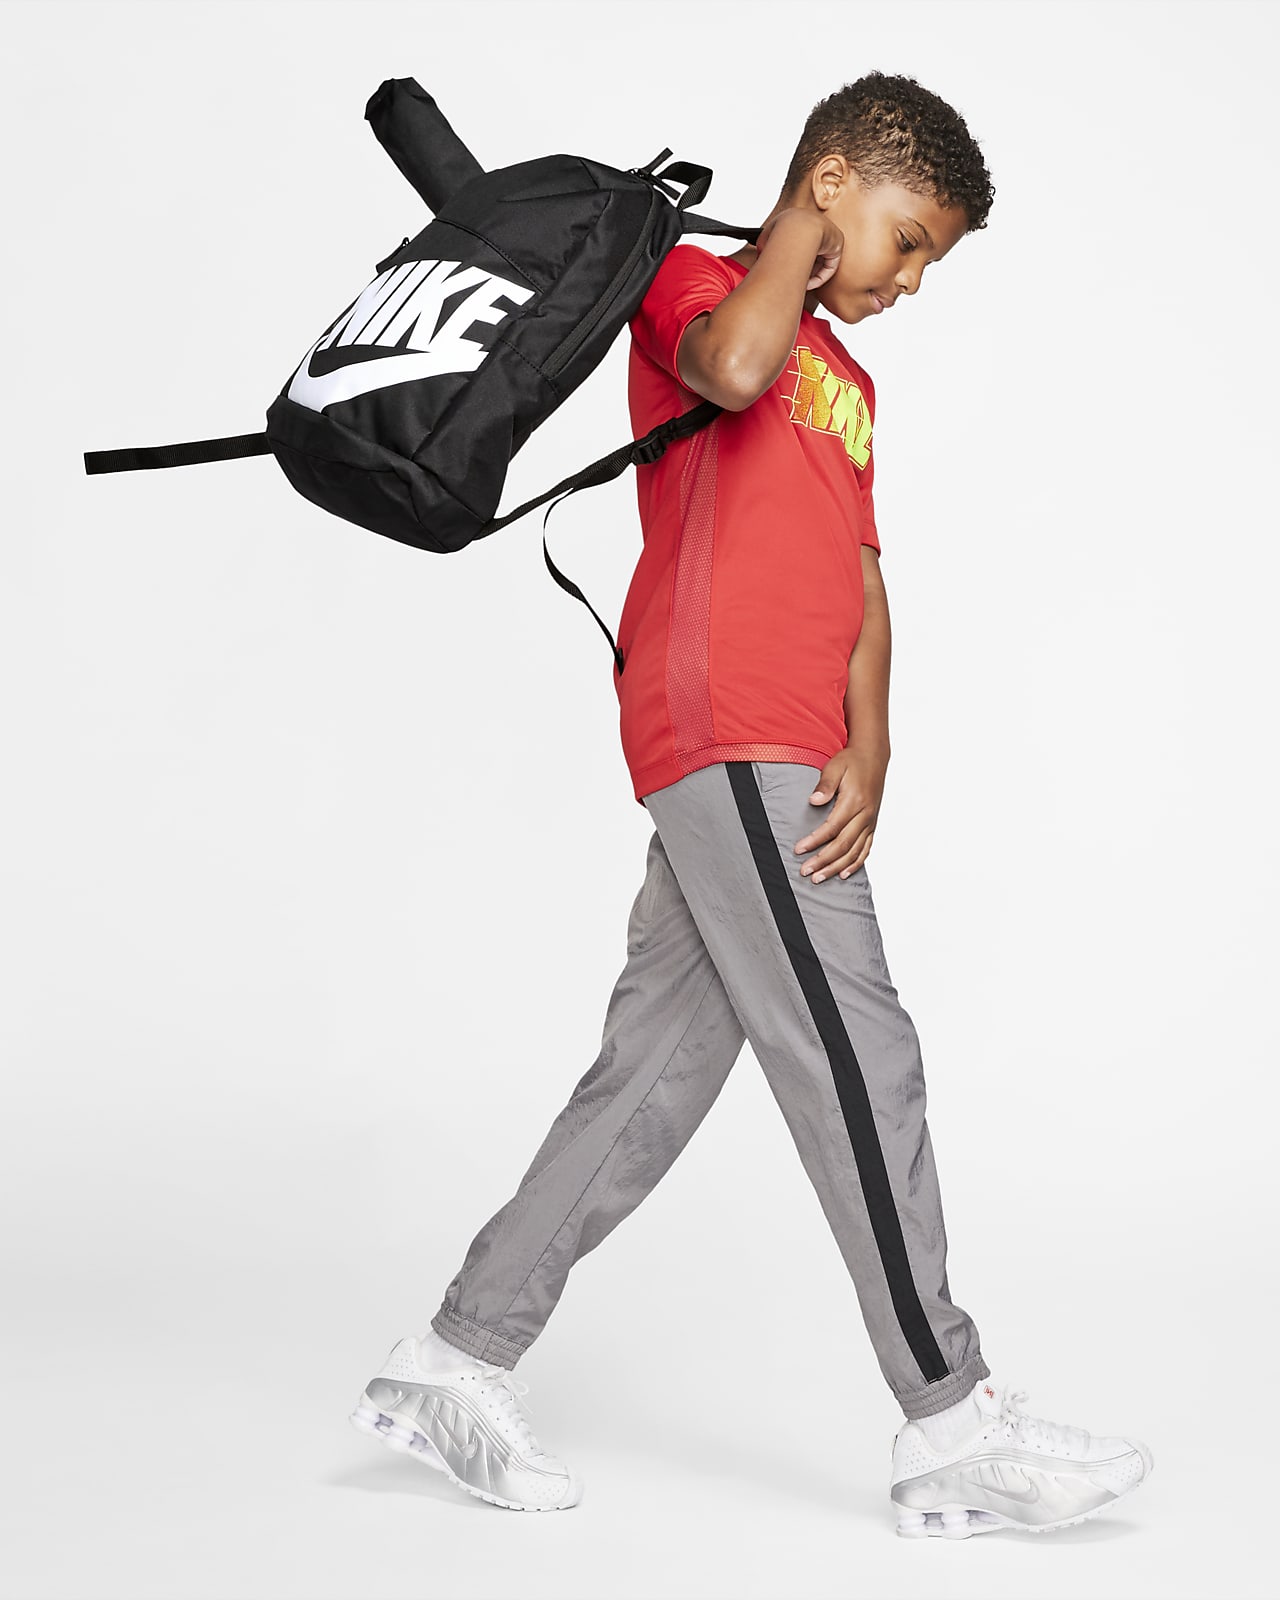 Nike Kids' Backpack (20L). Nike LU